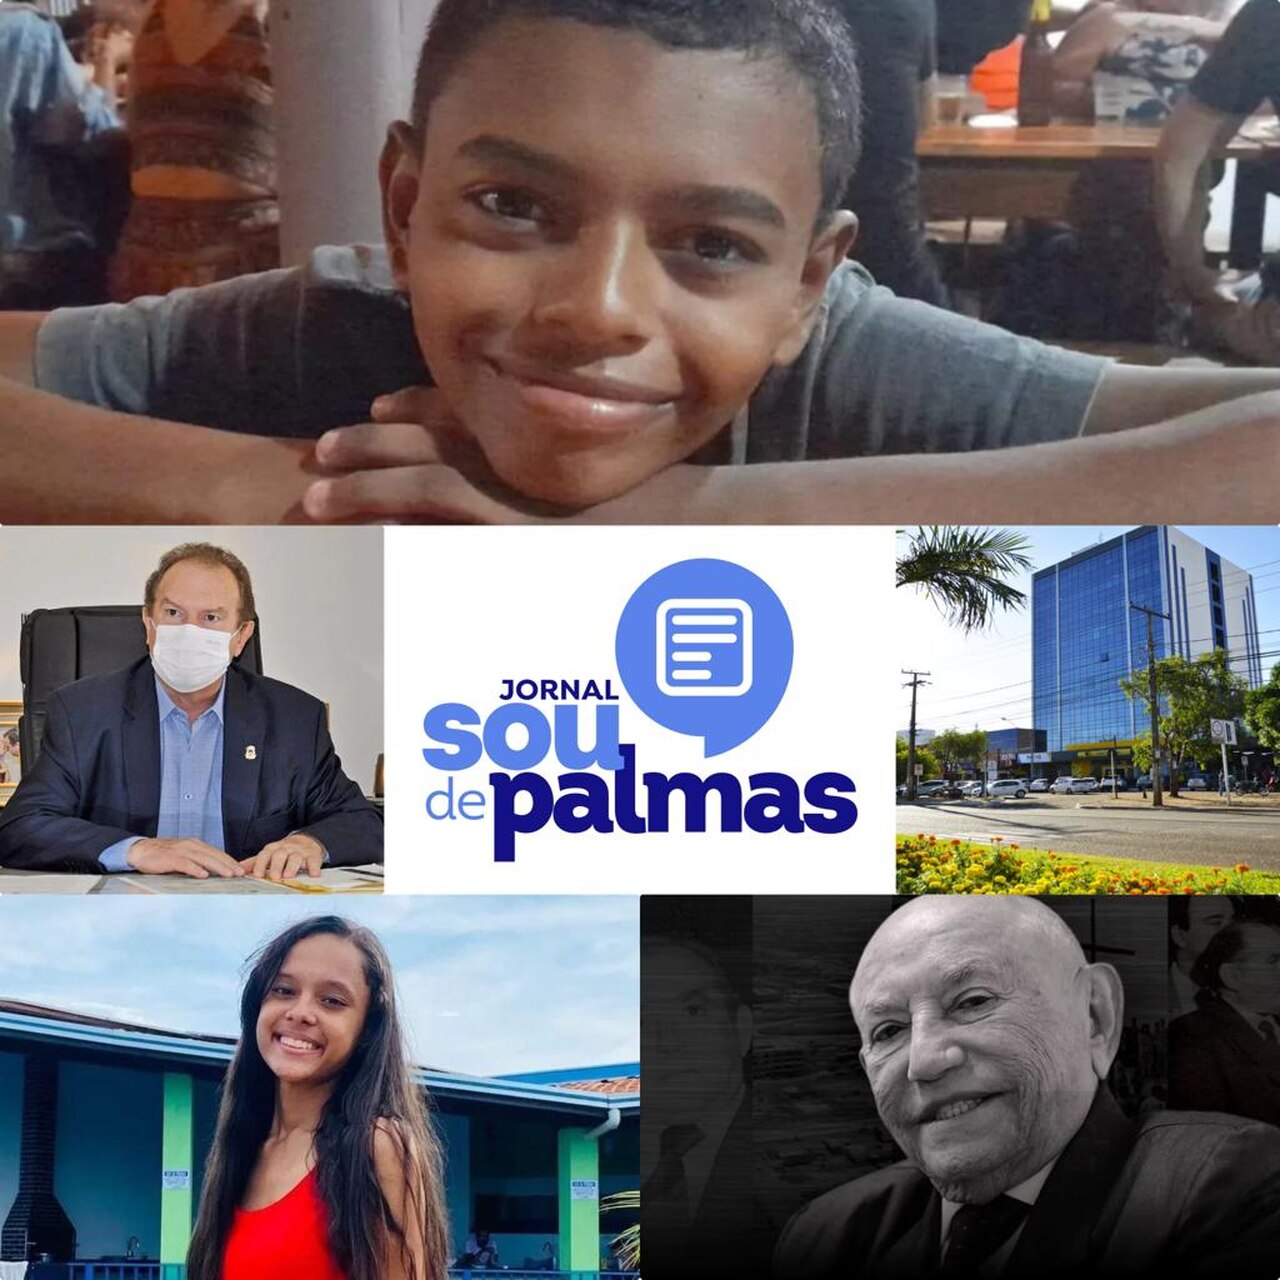 5 ANOS! Relembre notícias marcantes do Jornal Sou de Palmas durante a sua trajetória